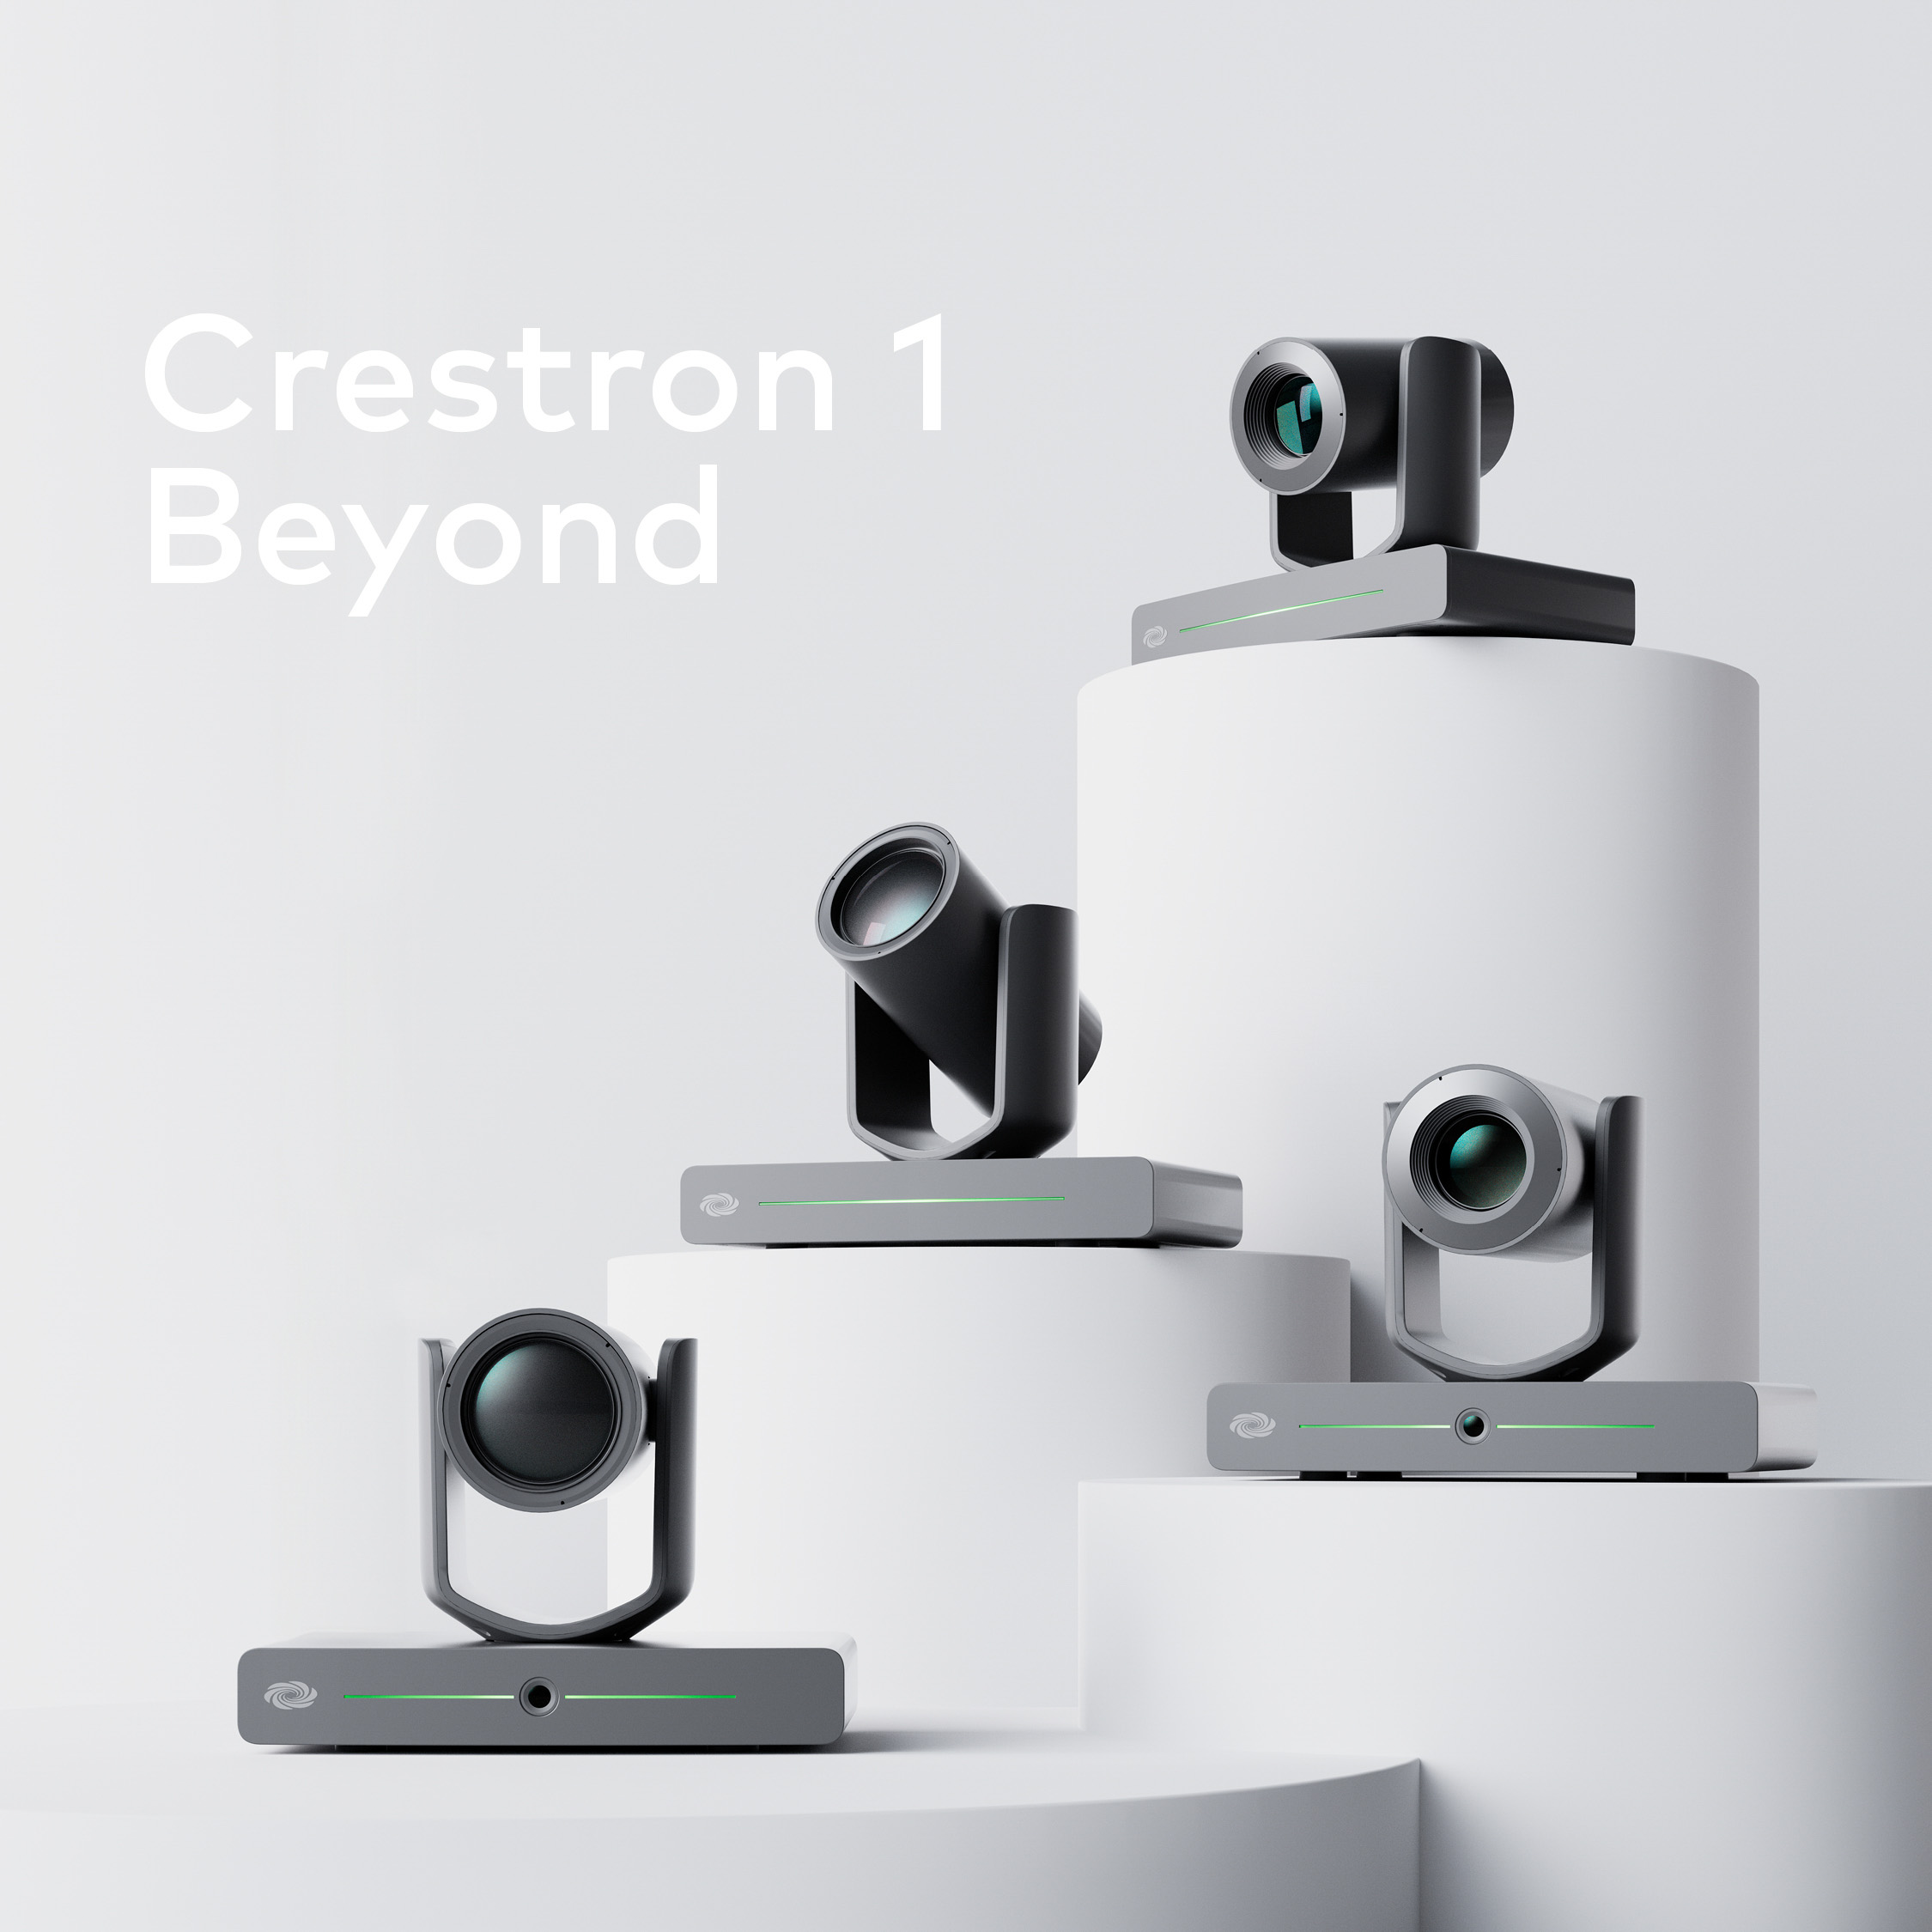 Crestron 1 Beyond Cameras